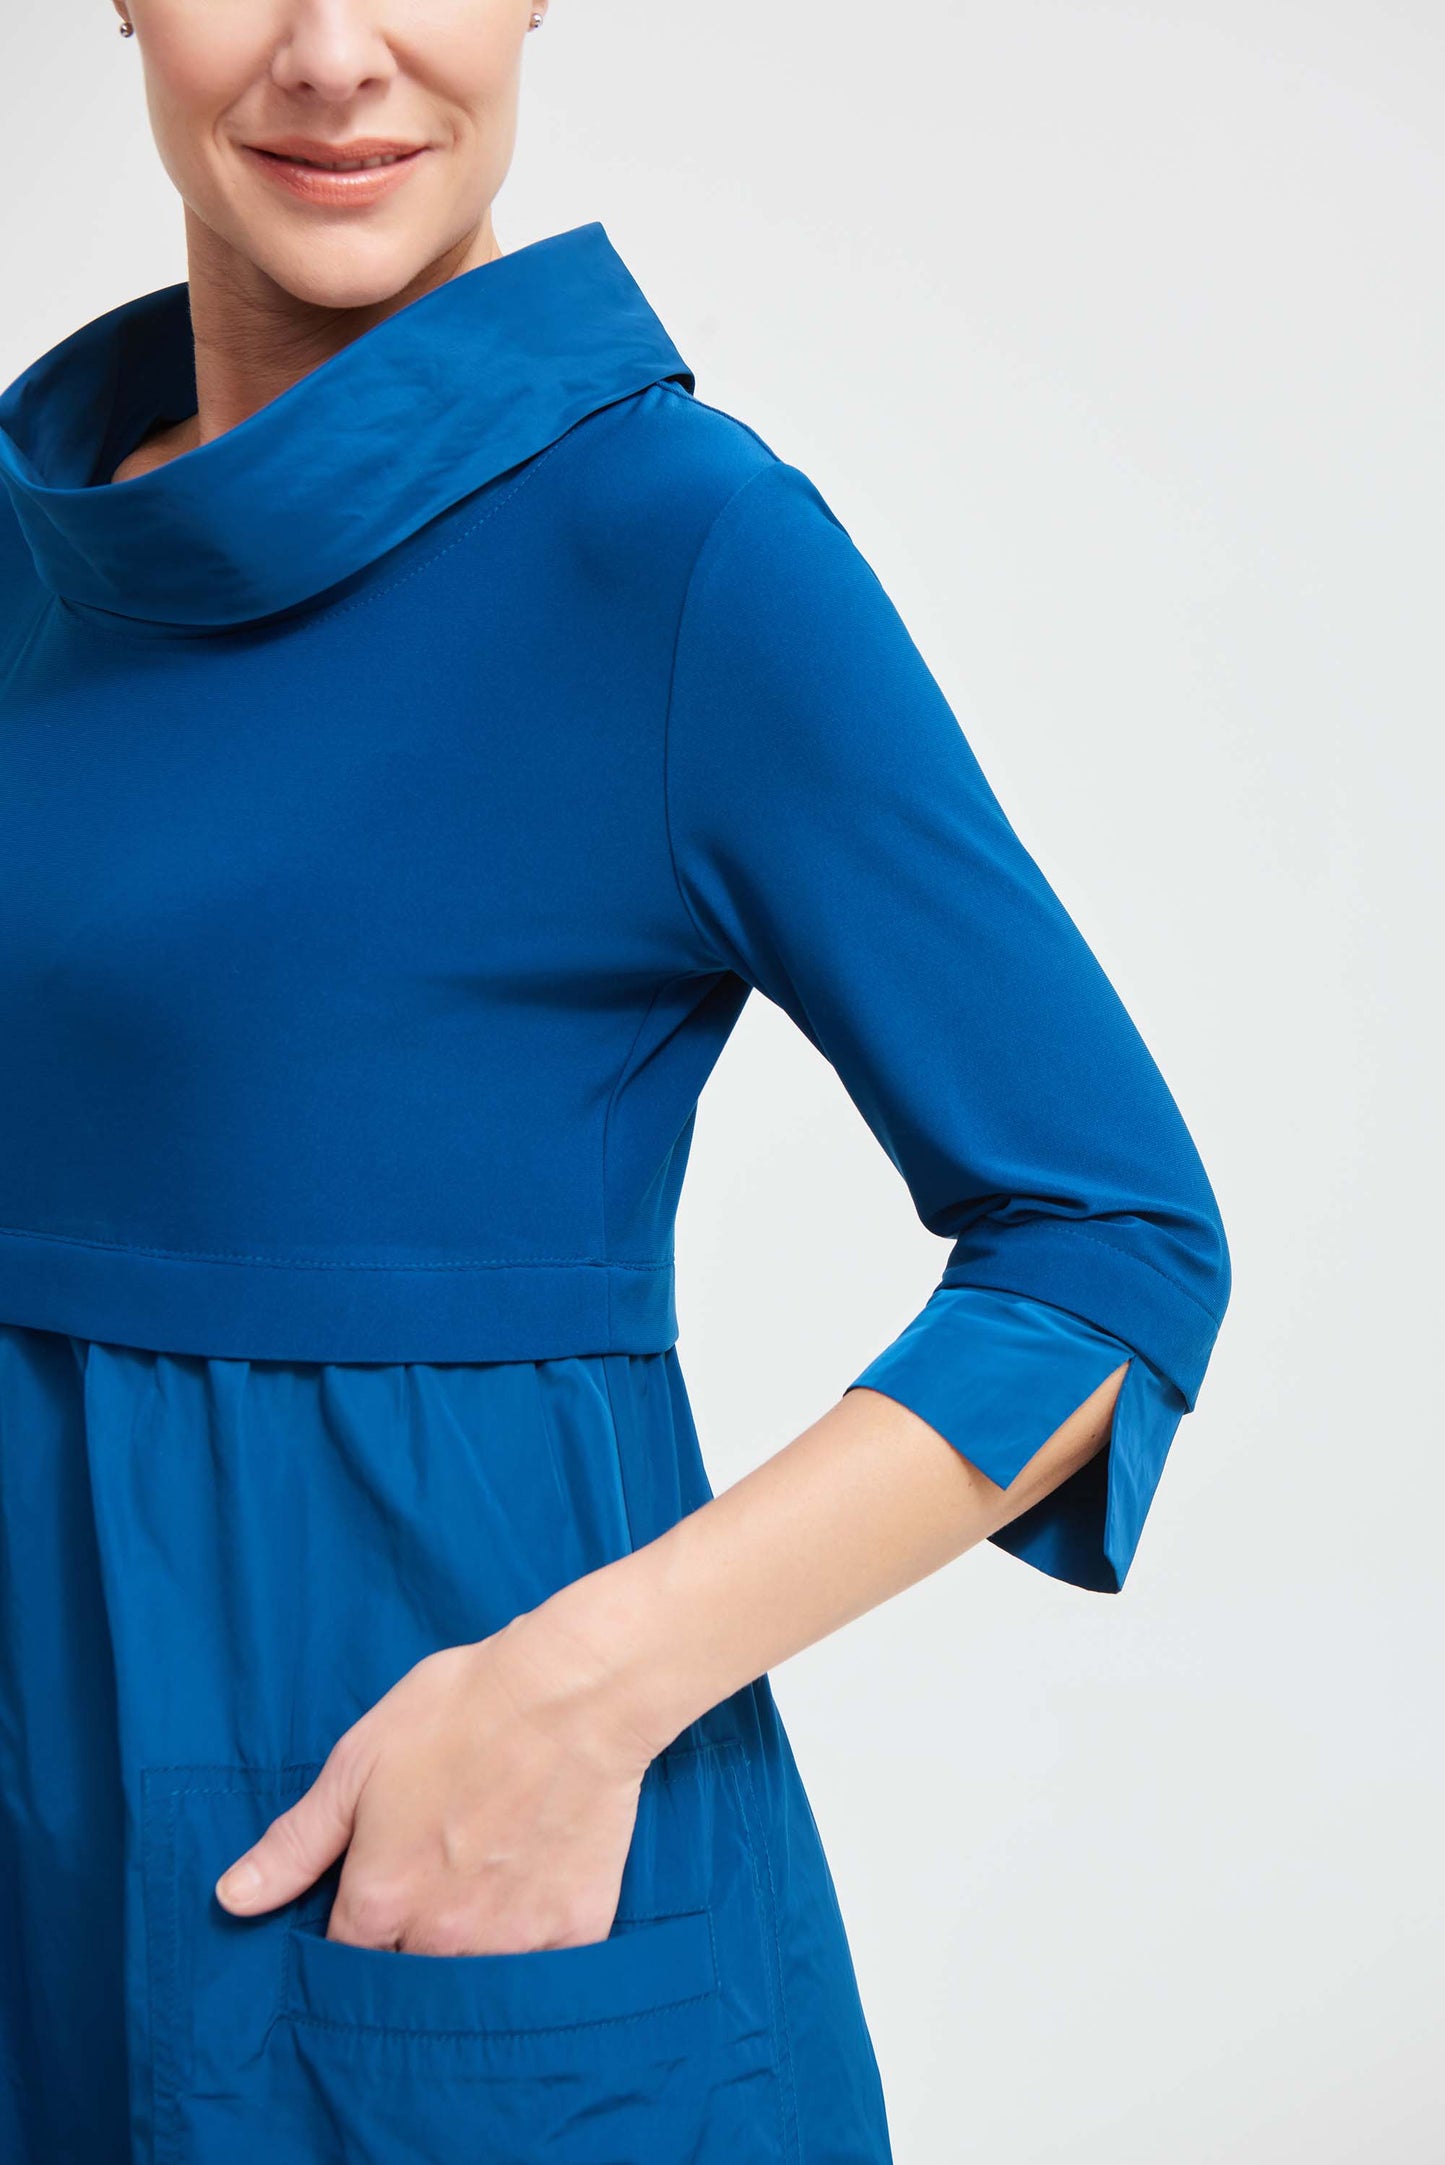 Joseph Ribkoff - Dress/Tunic Style 173444 1 x size 16 left